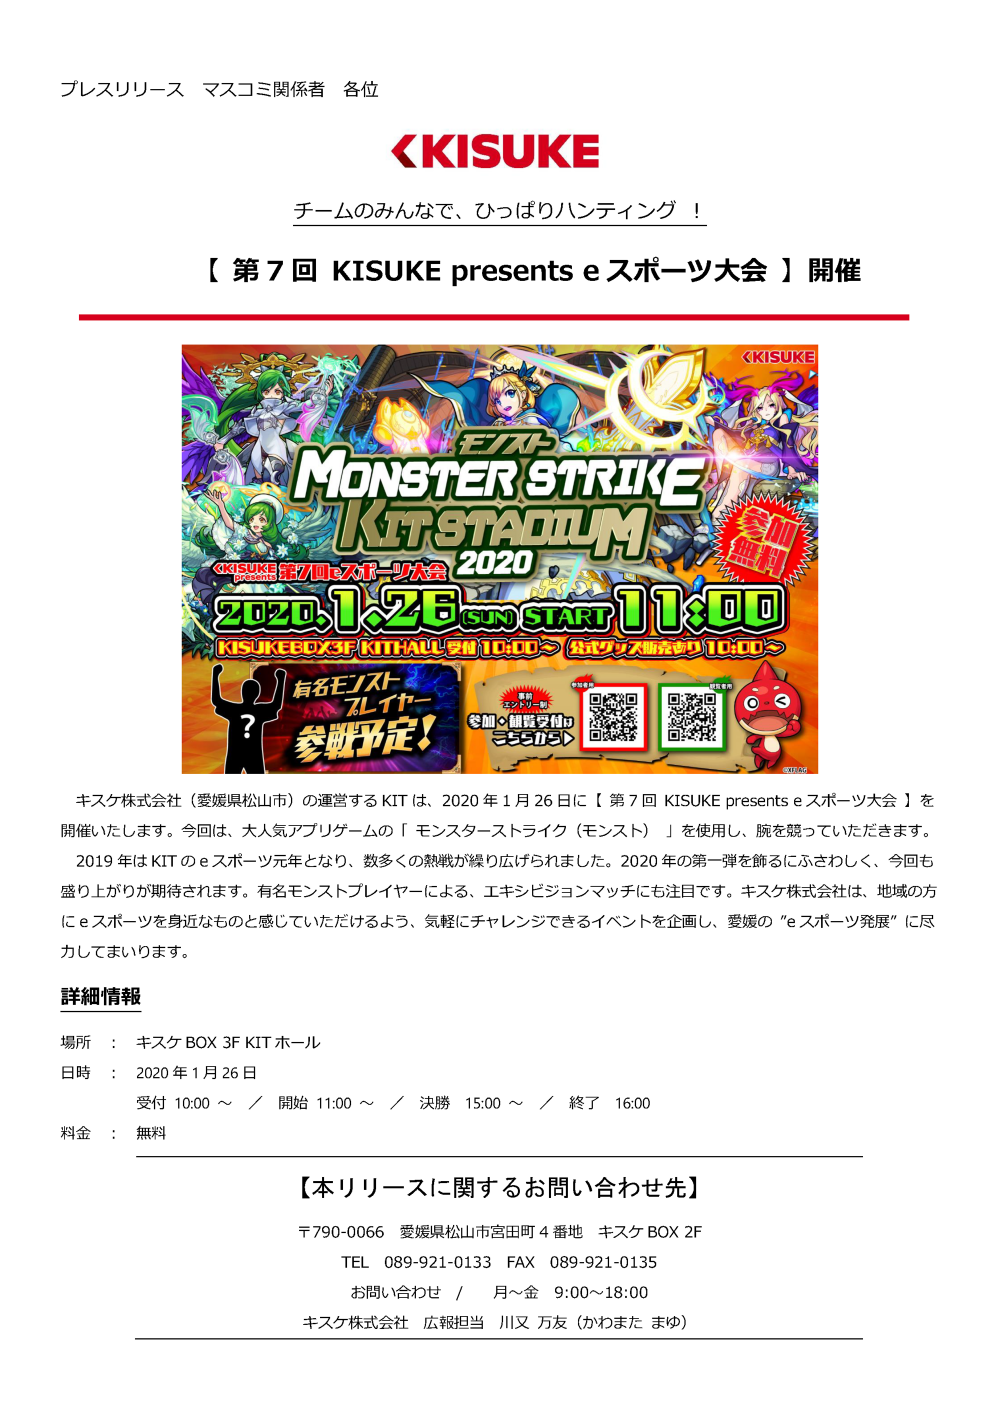 キスケ株式会社（愛媛県松山市）の運営するKITは、2020年1月26日に第7回 KISUKE presentse スポーツ大会を開催いたします。今回は、大人気アプリゲームの「モンスターストライク（モンスト）」を使用し、腕を競っていただきます。2019年はKITのeスポーツ元年となり、数多くの熱戦が繰り広げられました。2020年の第一弾を飾るにふさわしく、今回も盛り上がりが期待されます。有名モンストプレイヤーによる、エキシビジョンマッチにも注目です。キスケ株式会社は、地域の方にeスポーツを身近なものと感じていただけるよう、気軽にチャレンジできるイベントを企画し、愛媛のeスポーツ発展に尽力してまいります。詳細 